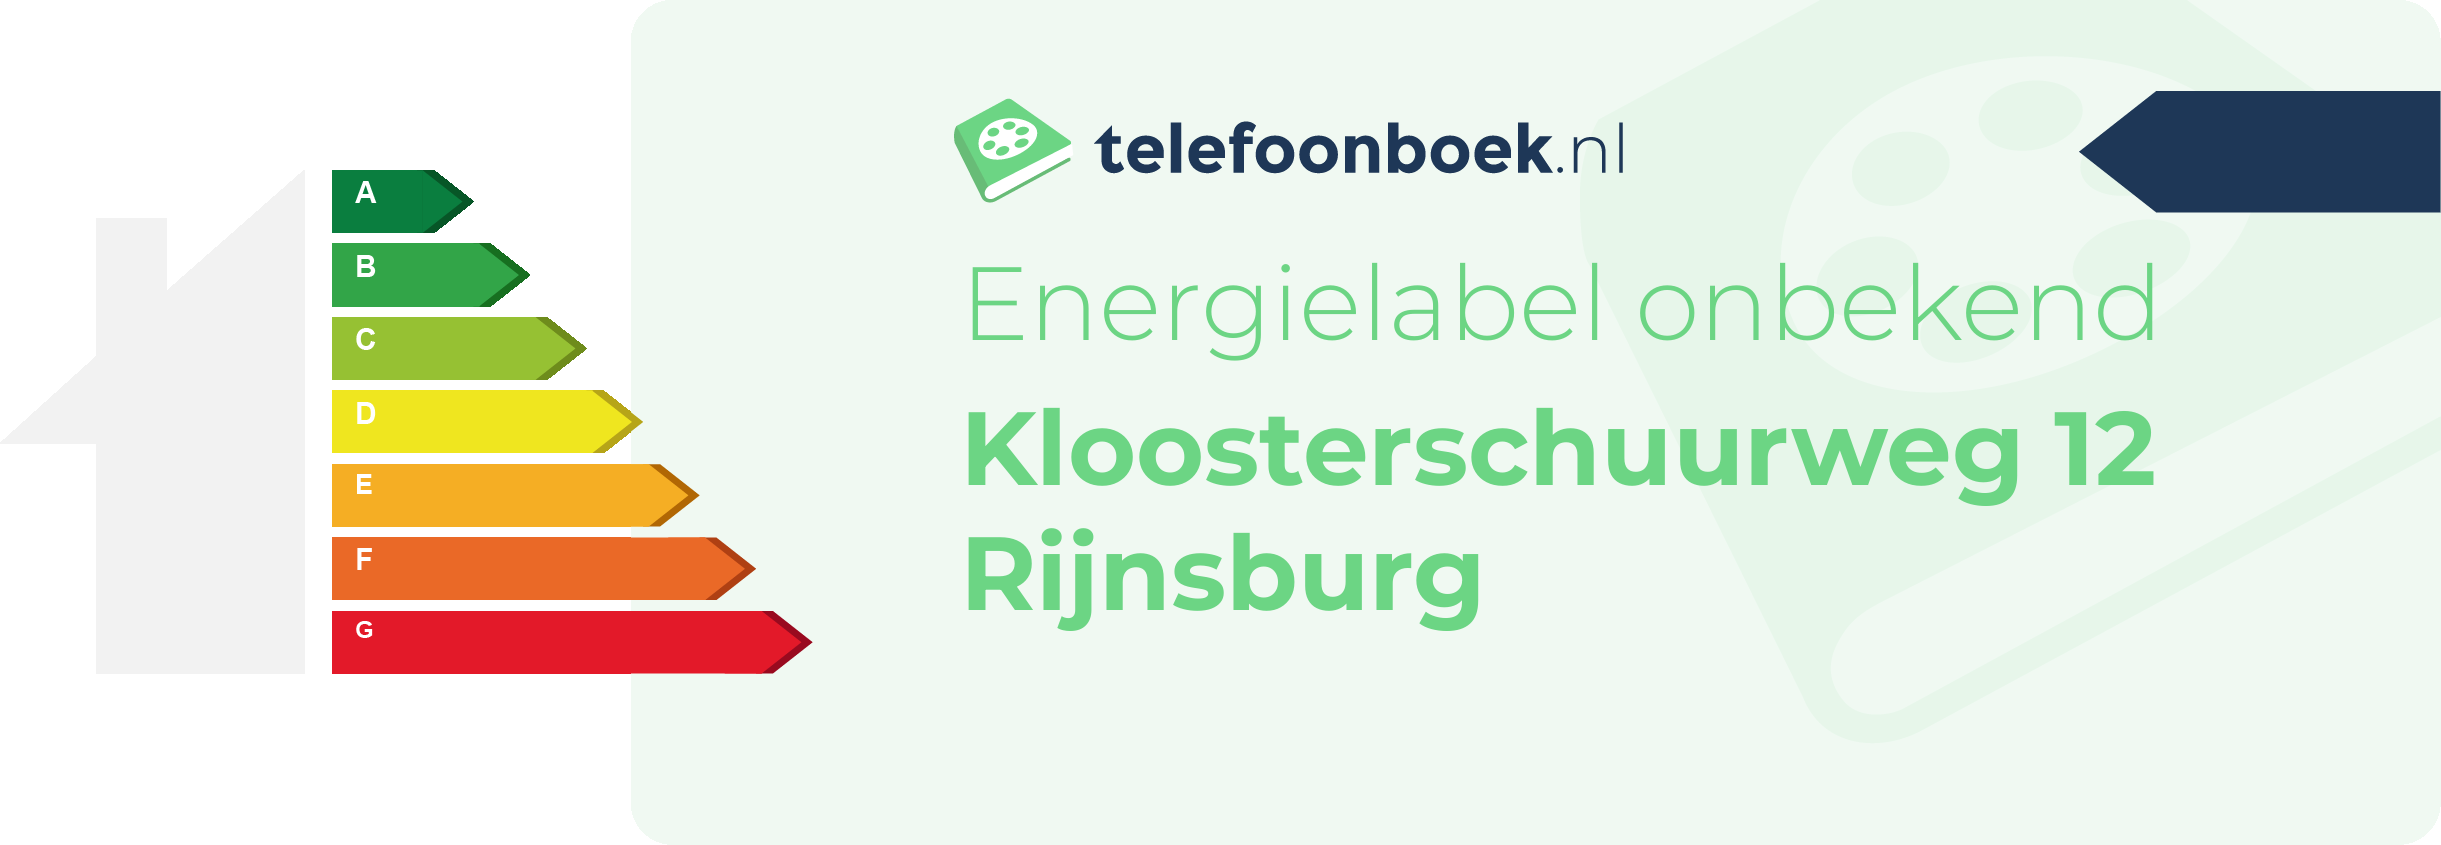 Energielabel Kloosterschuurweg 12 Rijnsburg